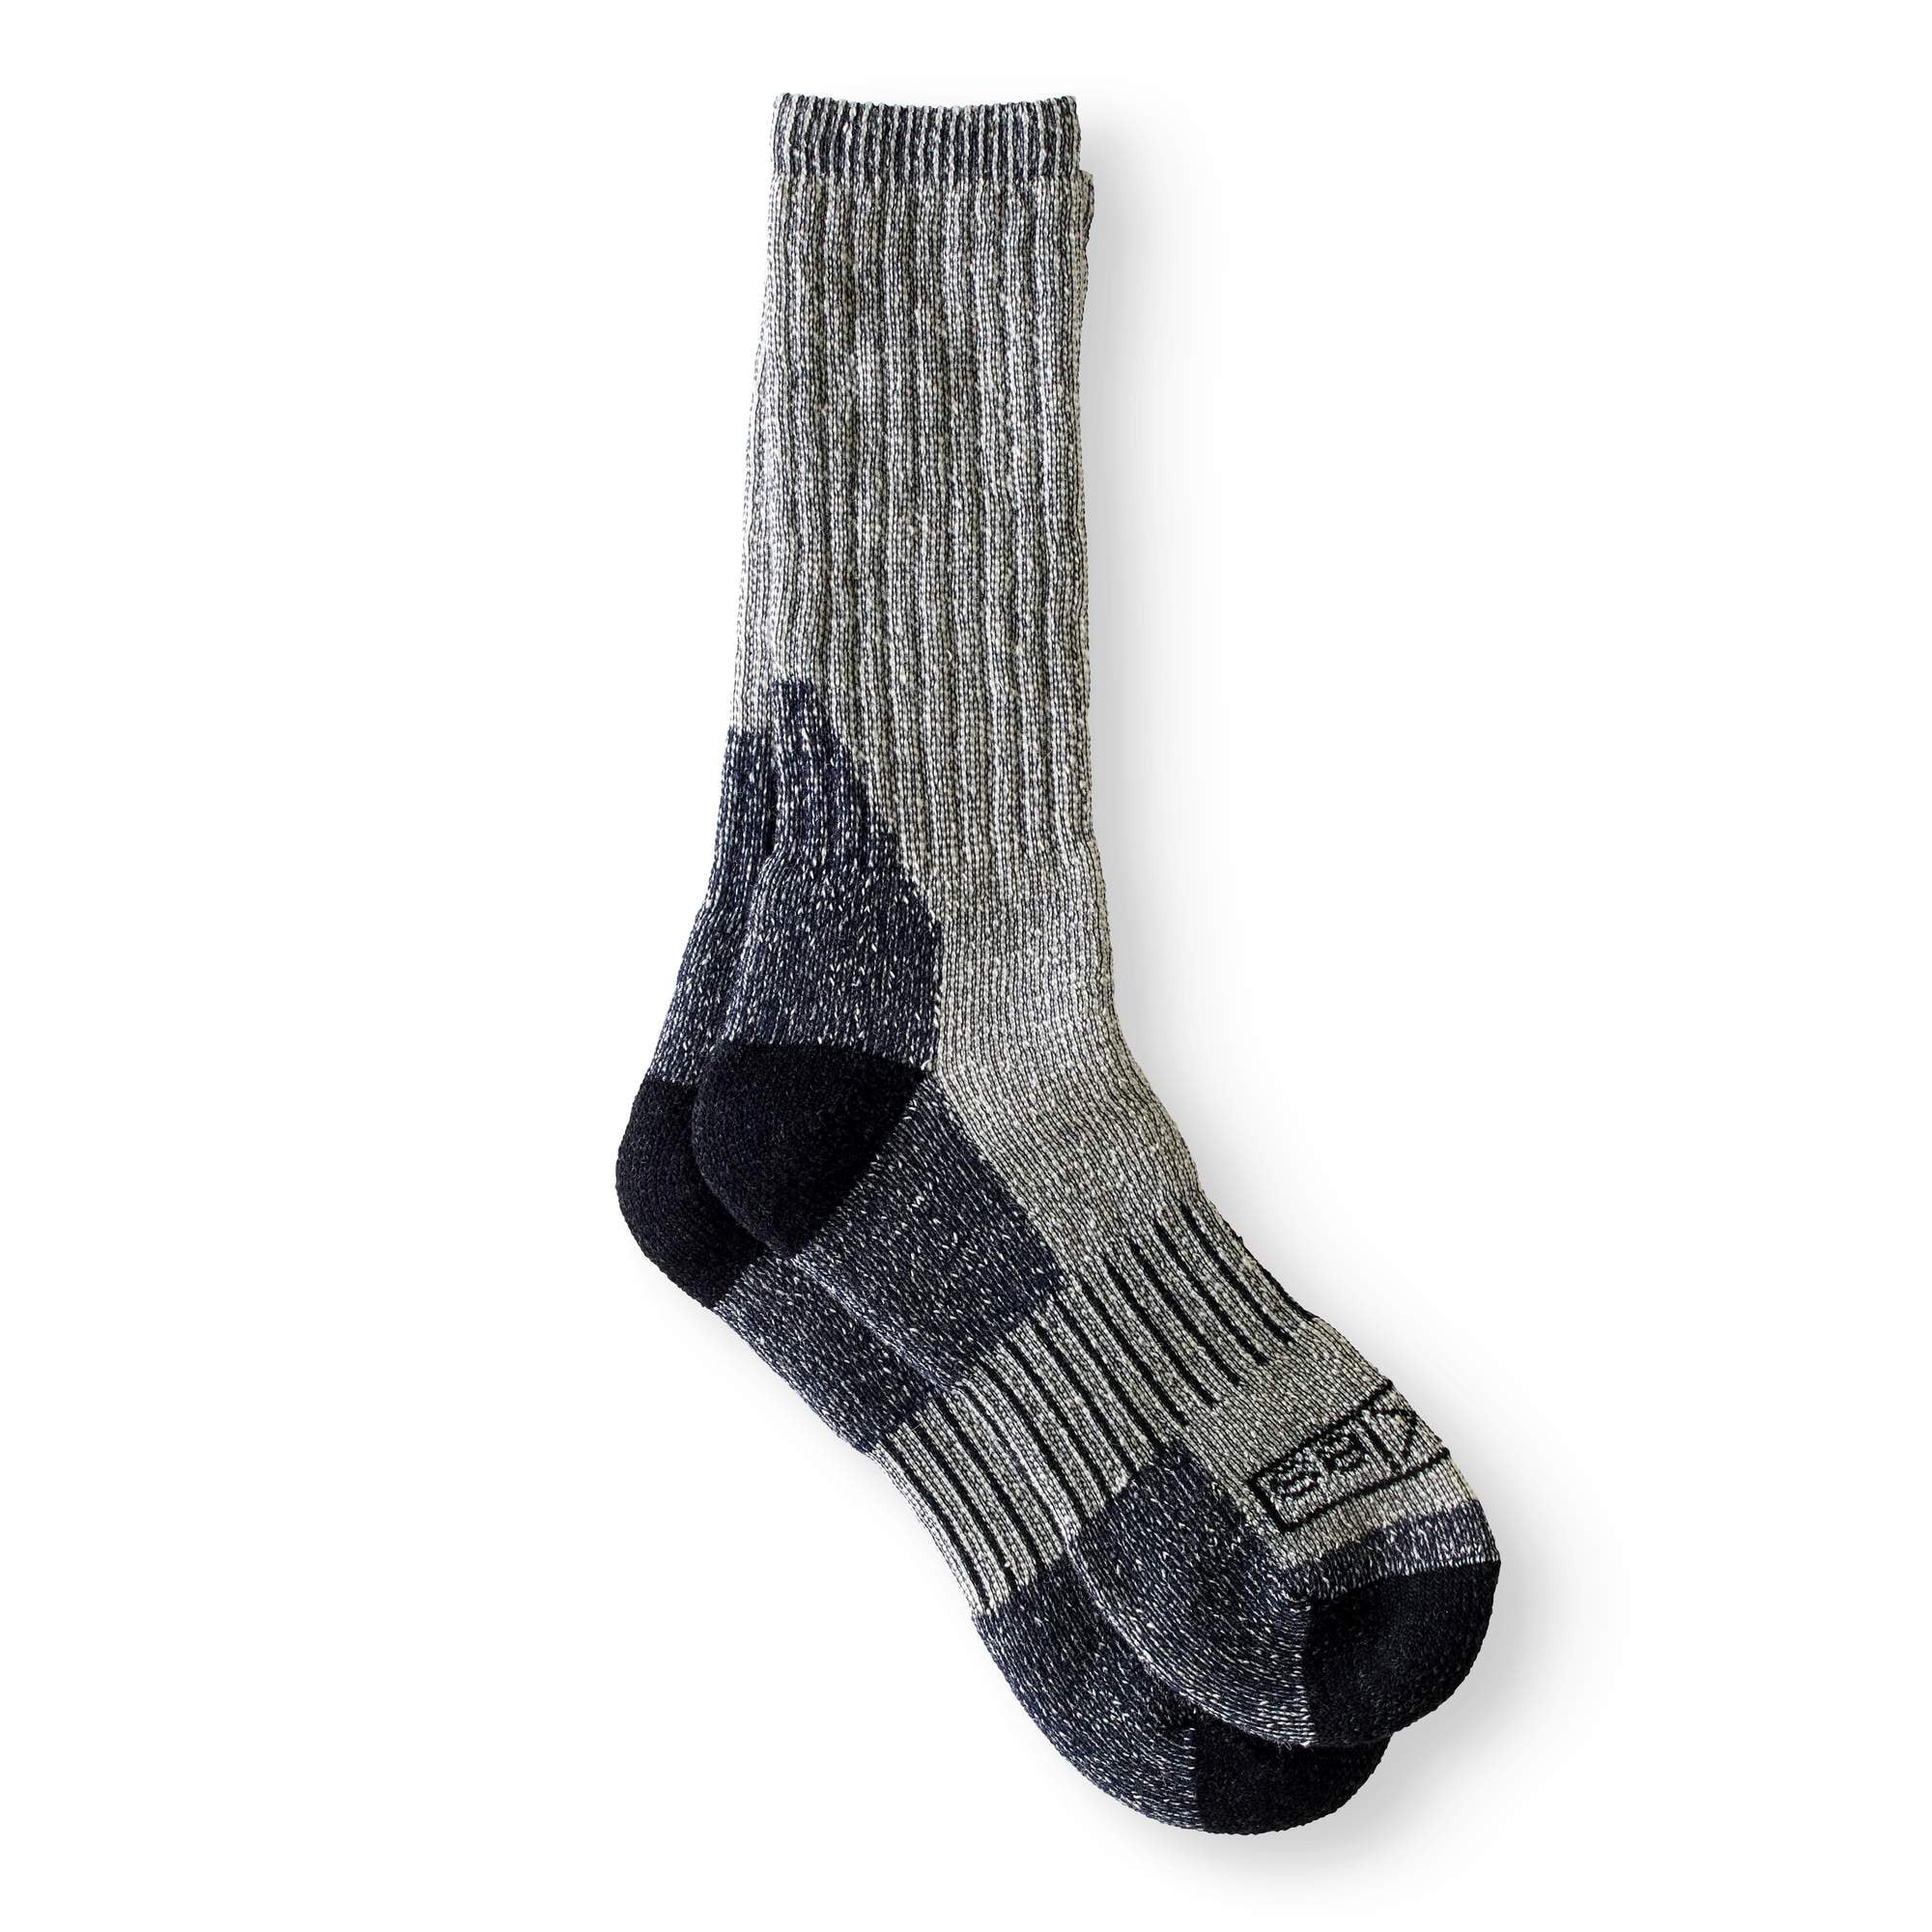 Genuine Dickies Men's Wool Thermal Steel Toe Crew Socks, 2-Pack